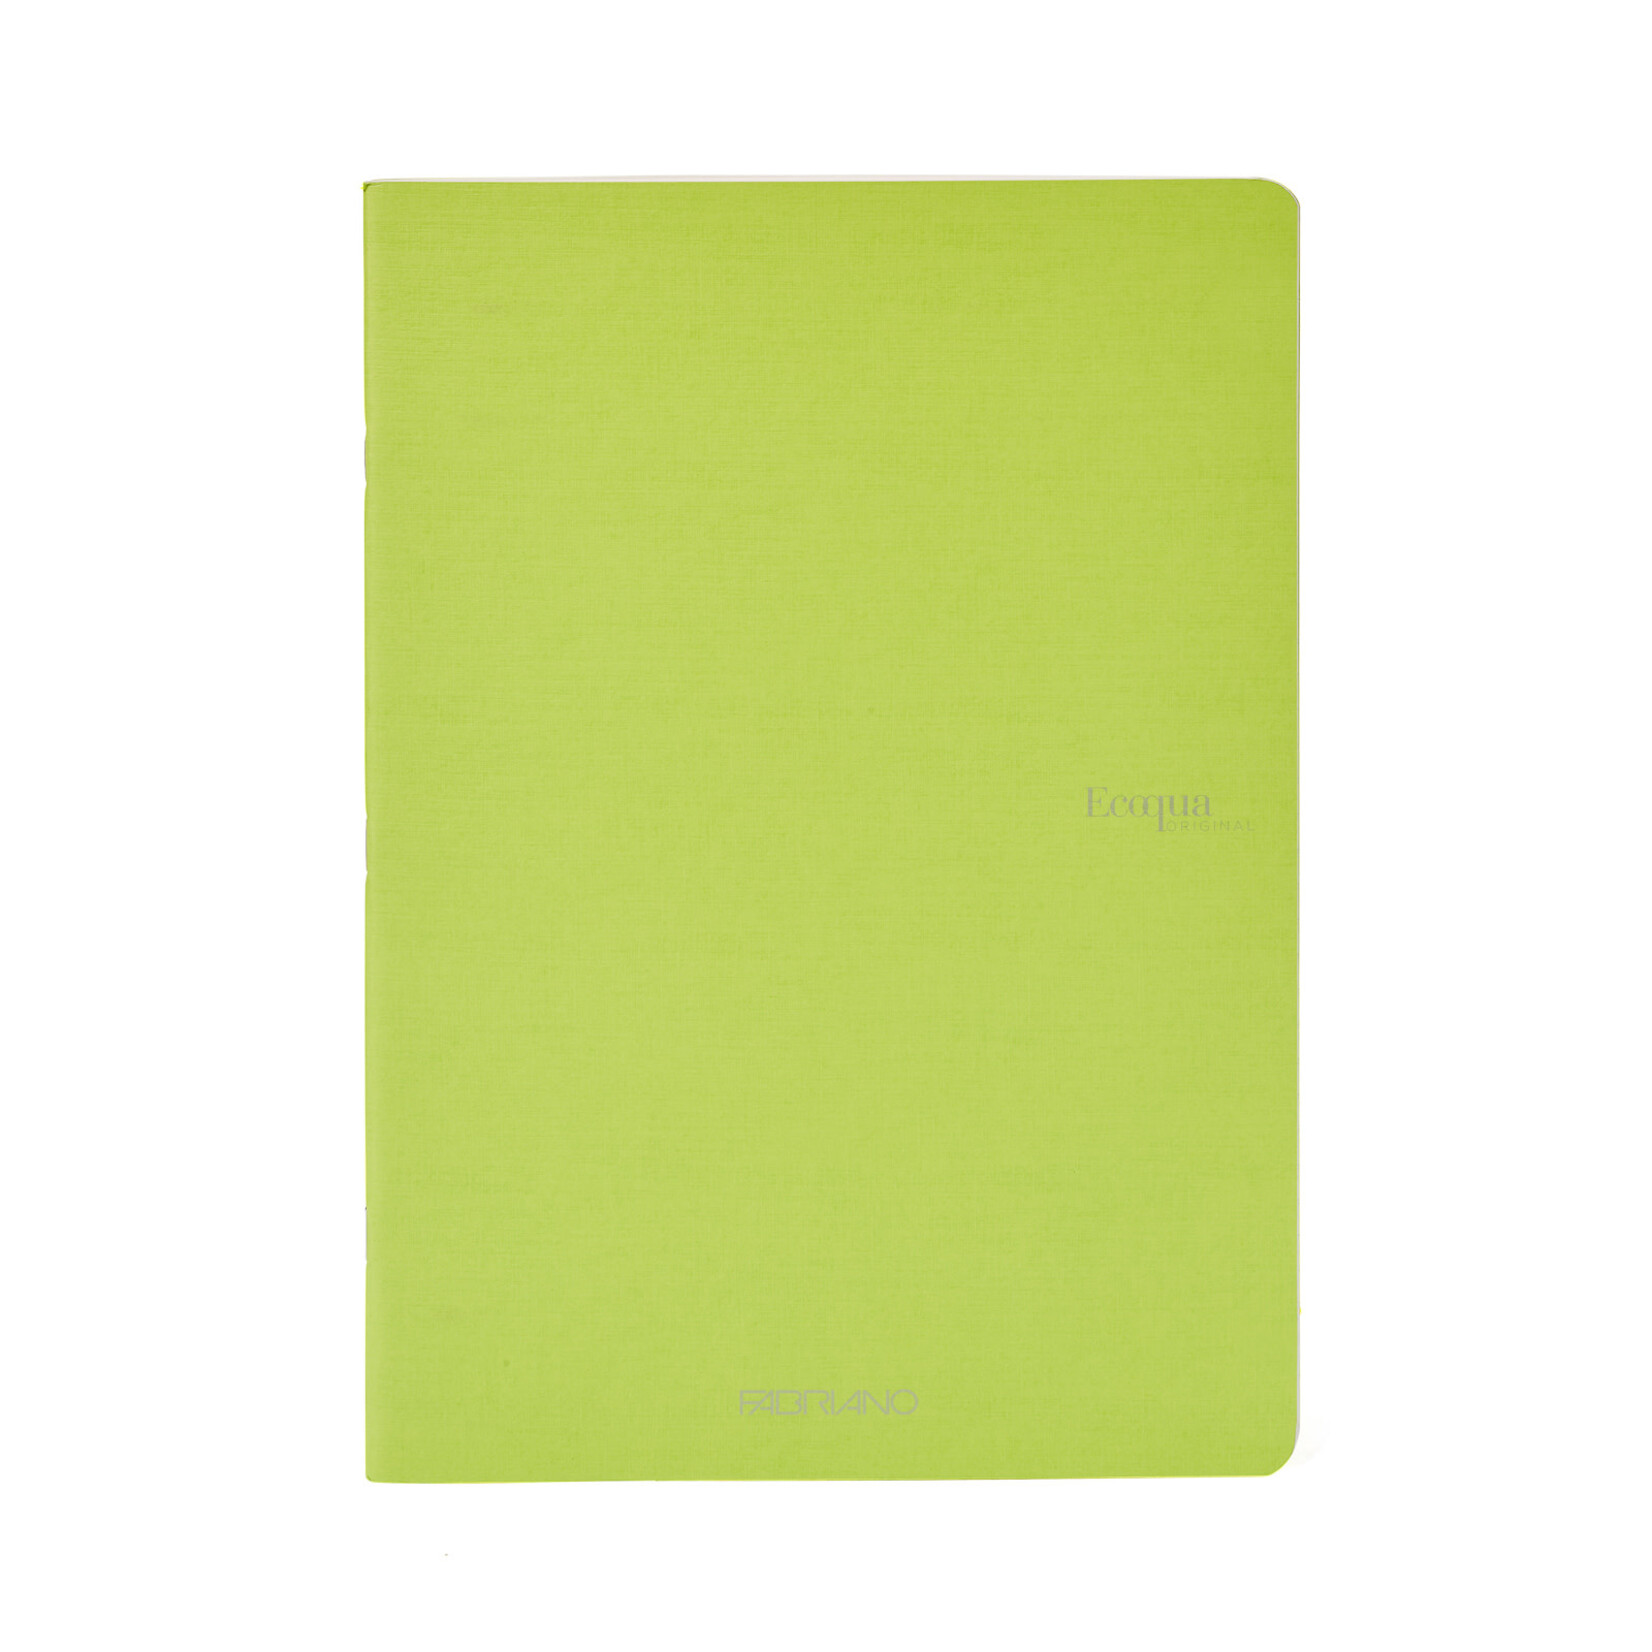 Fabriano Ecoqua Original Staple-Bound Notebooks, 5.8" x 8.3" (A5) - Blank, Lime - 40 Shts